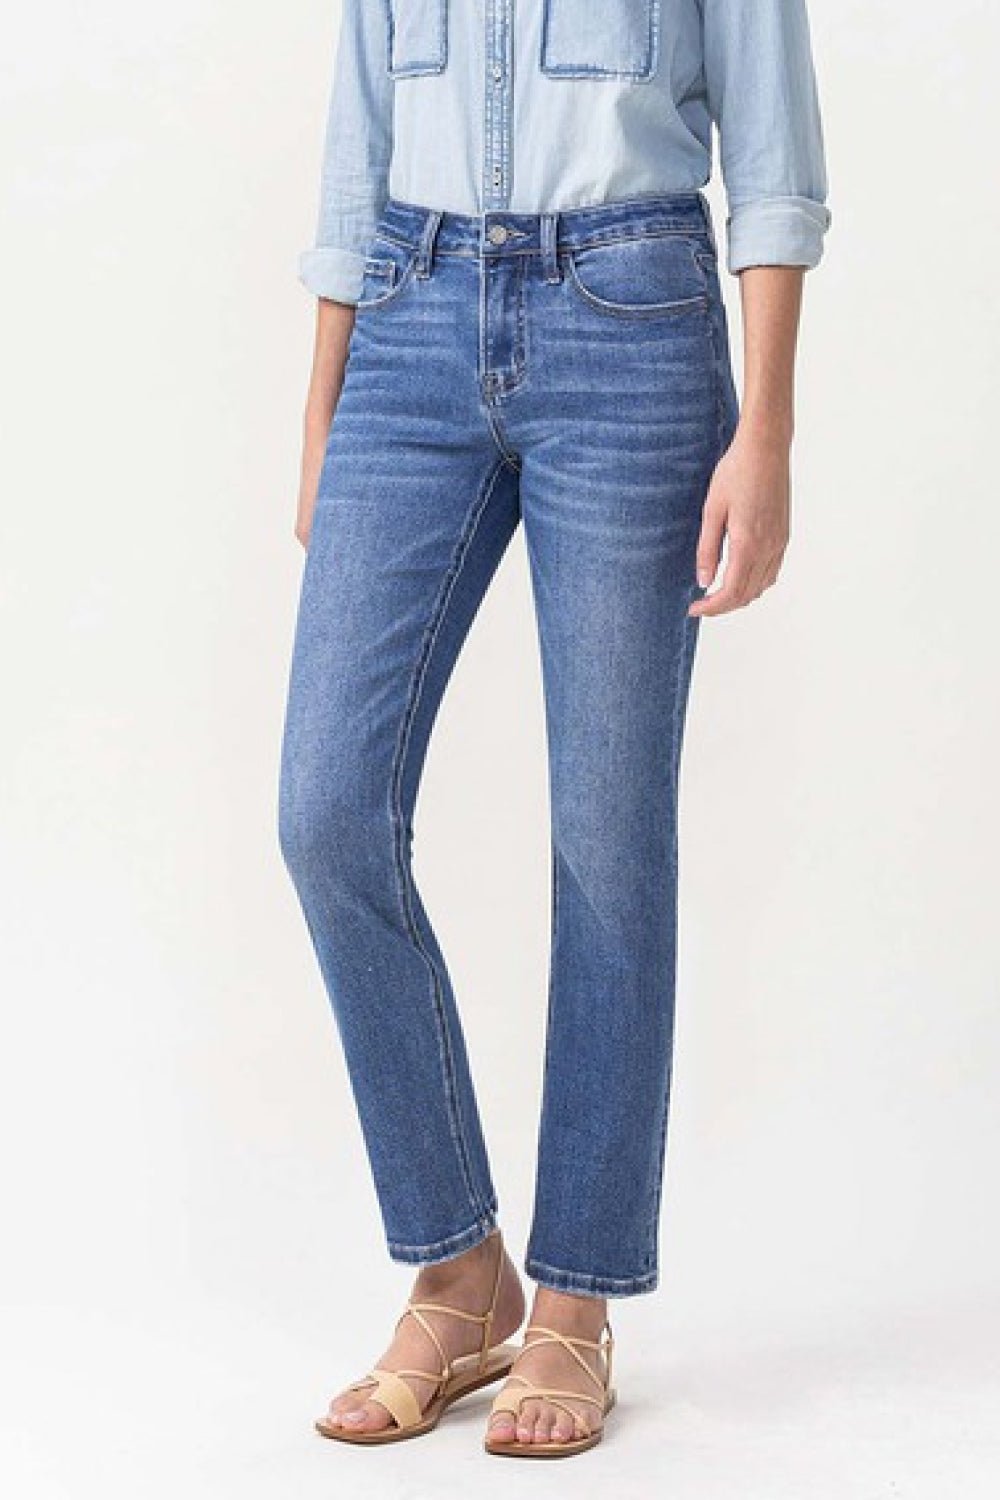 Lovervet Full Size Maggie Midrise Slim Ankle Straight Jeans - Mack & Harvie